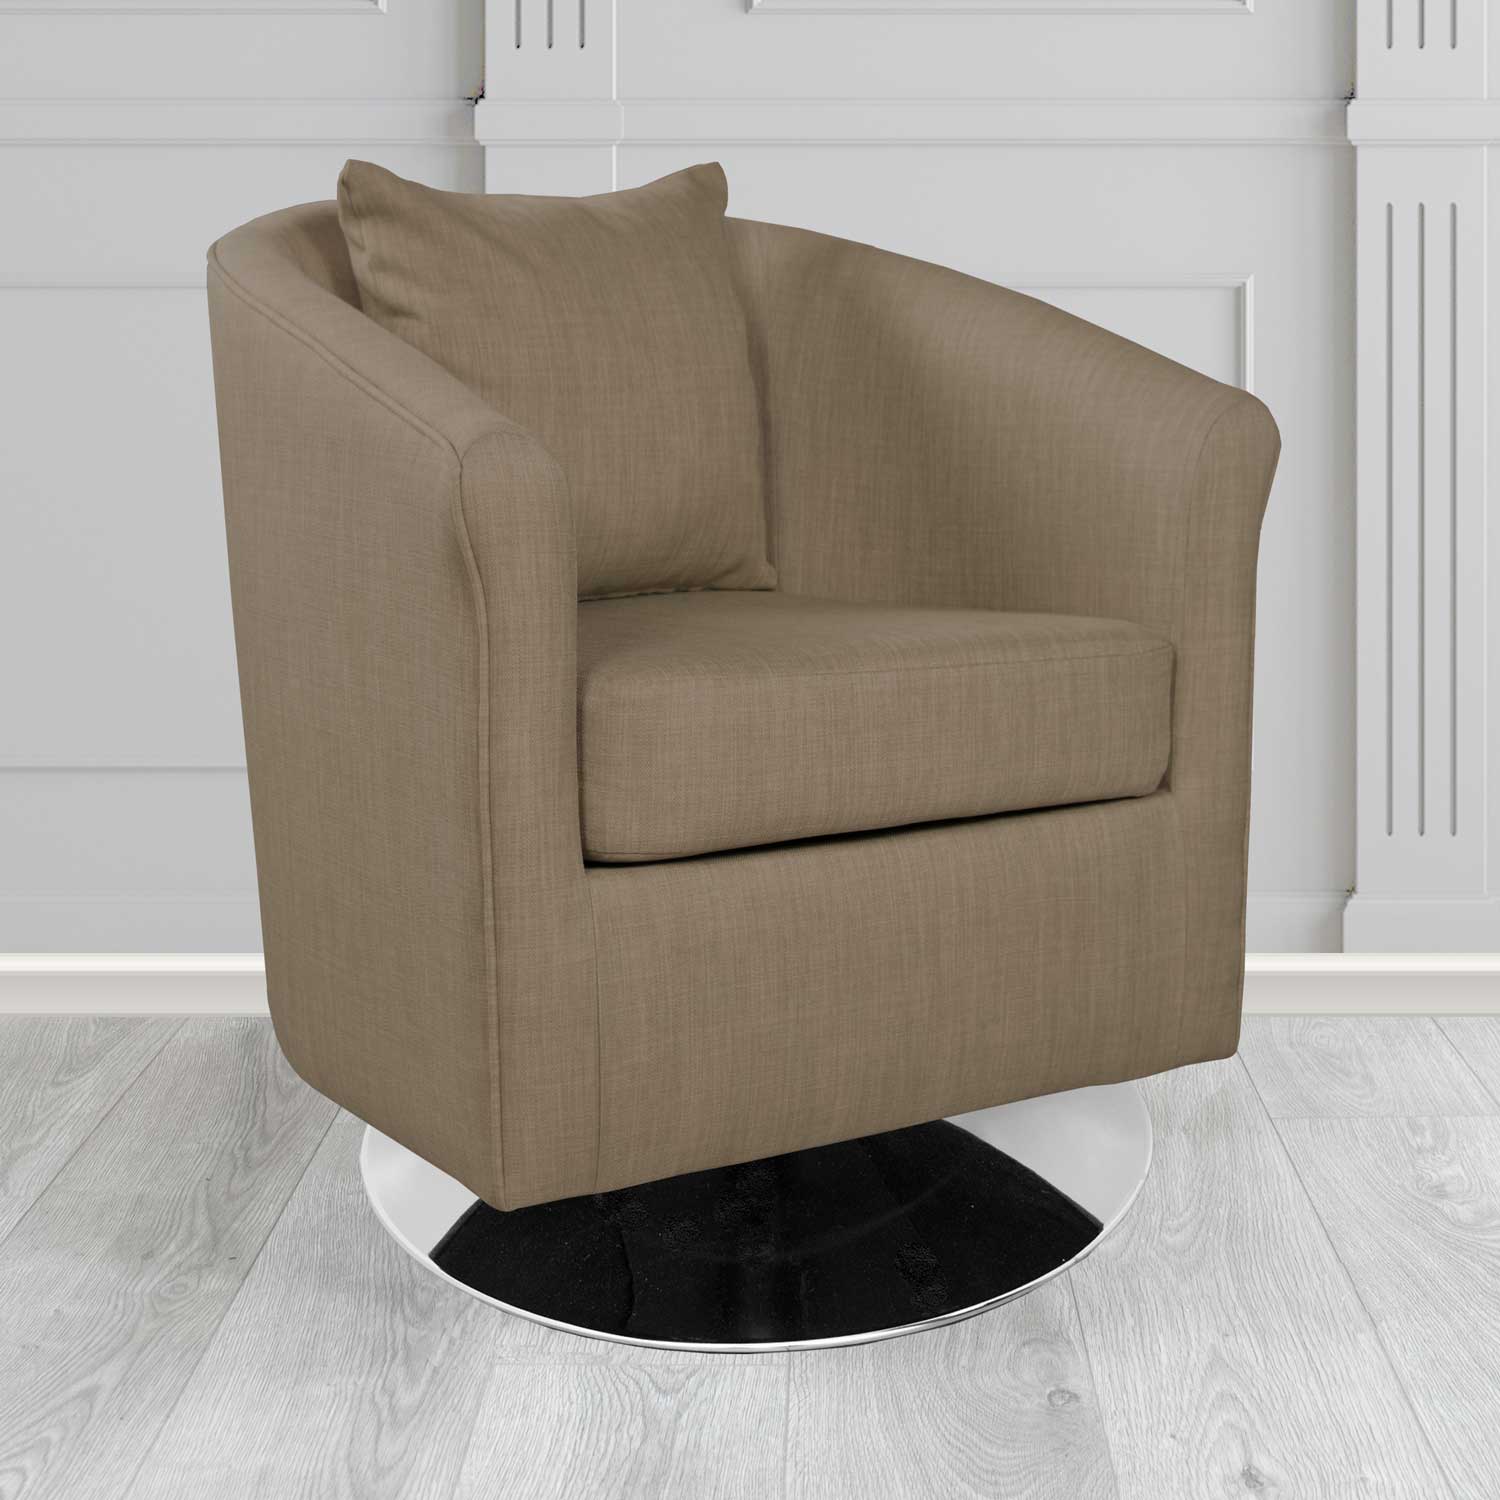 St Tropez Charles Nutmeg Plain Linen Fabric Swivel Tub Chair - The Tub Chair Shop